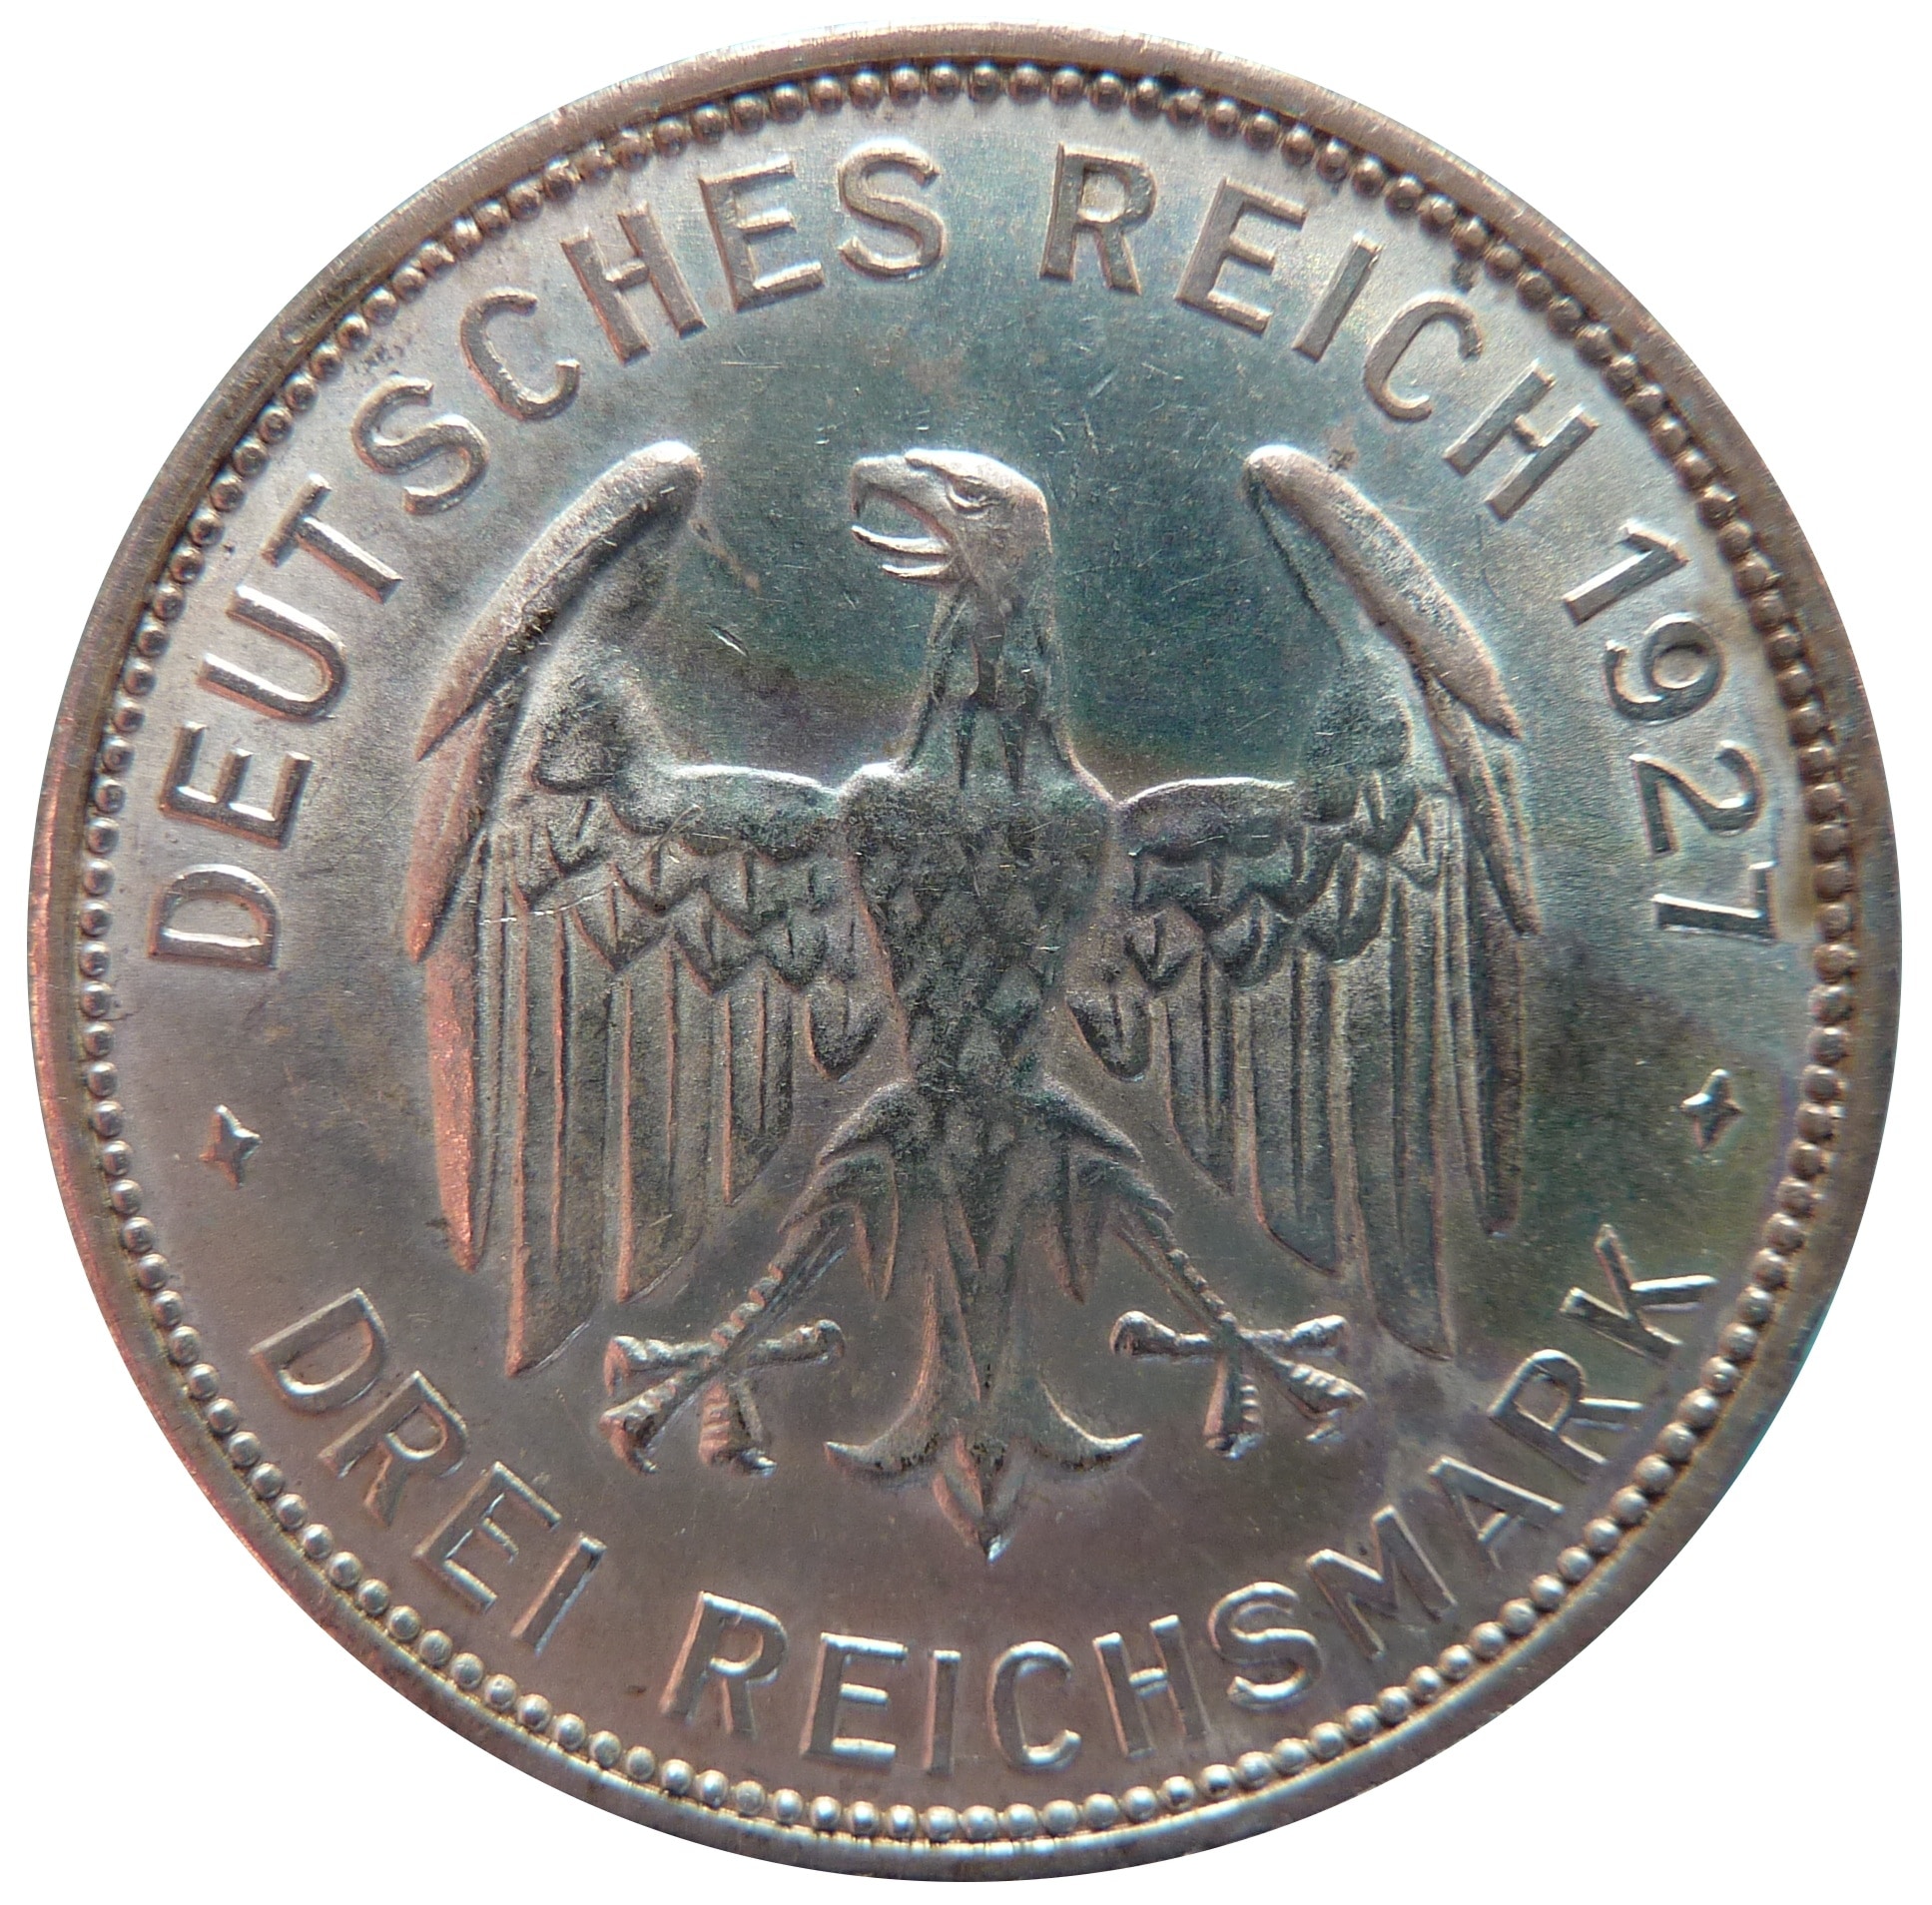 silver drei reichsmark commemorative coin